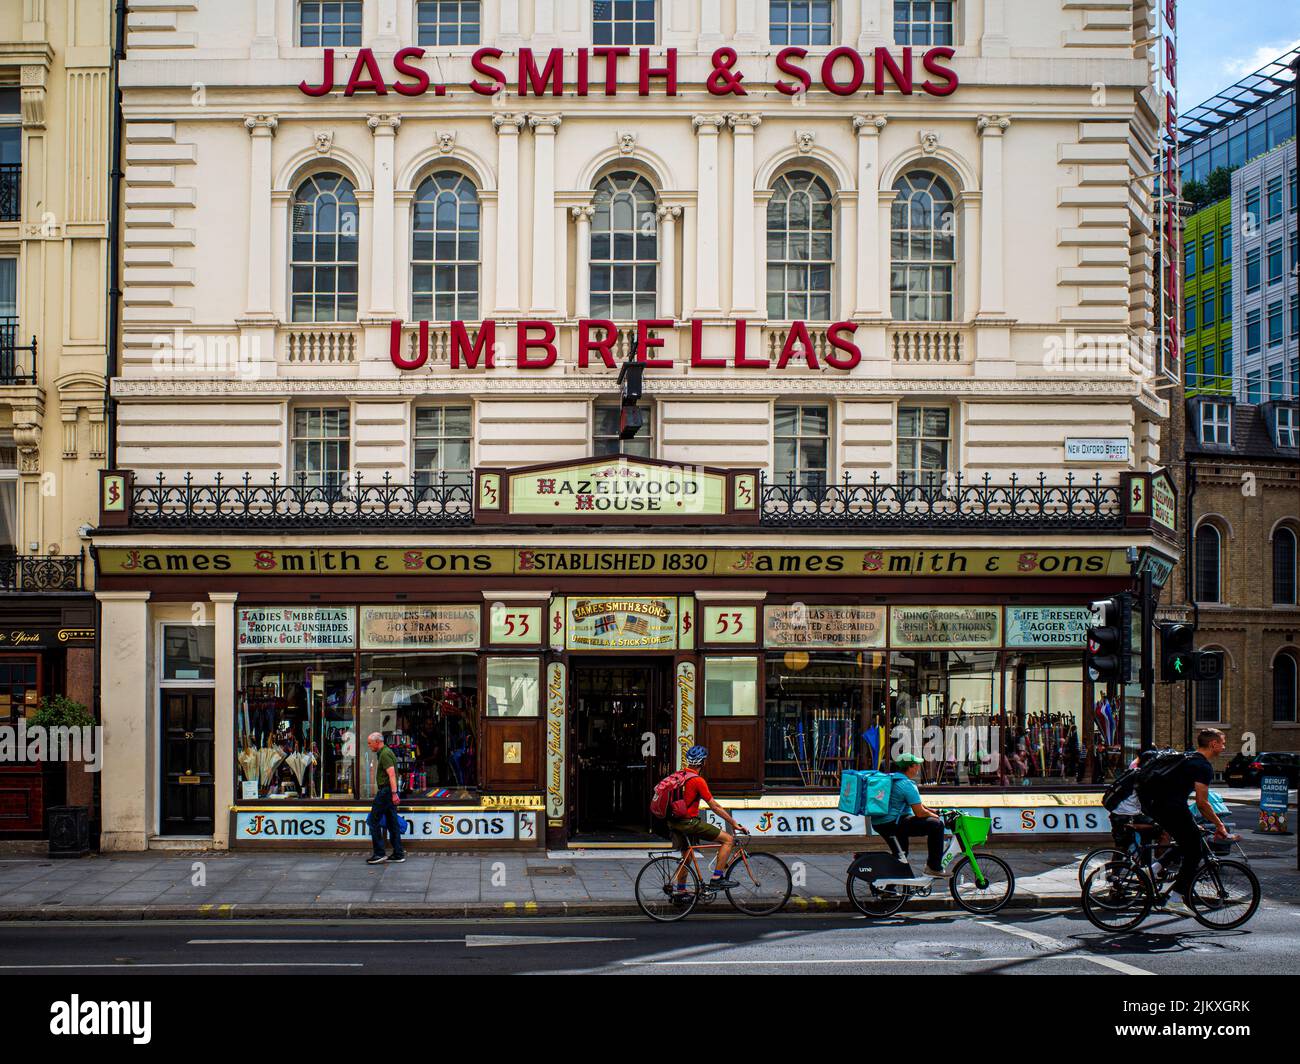 James Smith & Sons tienda de paraguas en New Oxford Street en el centro de Londres. Tienda tradicional venta de paraguas y bastones. Fundada 1830. Foto de stock